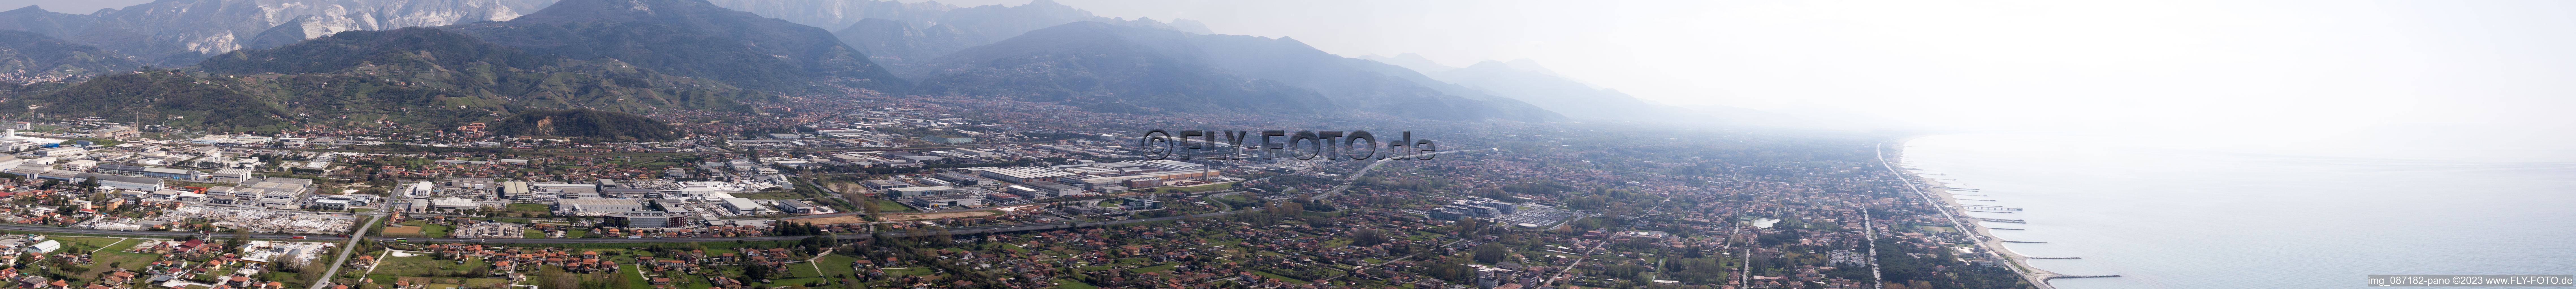 Luftbild von Panorama in Avenza im Bundesland Toscana, Italien